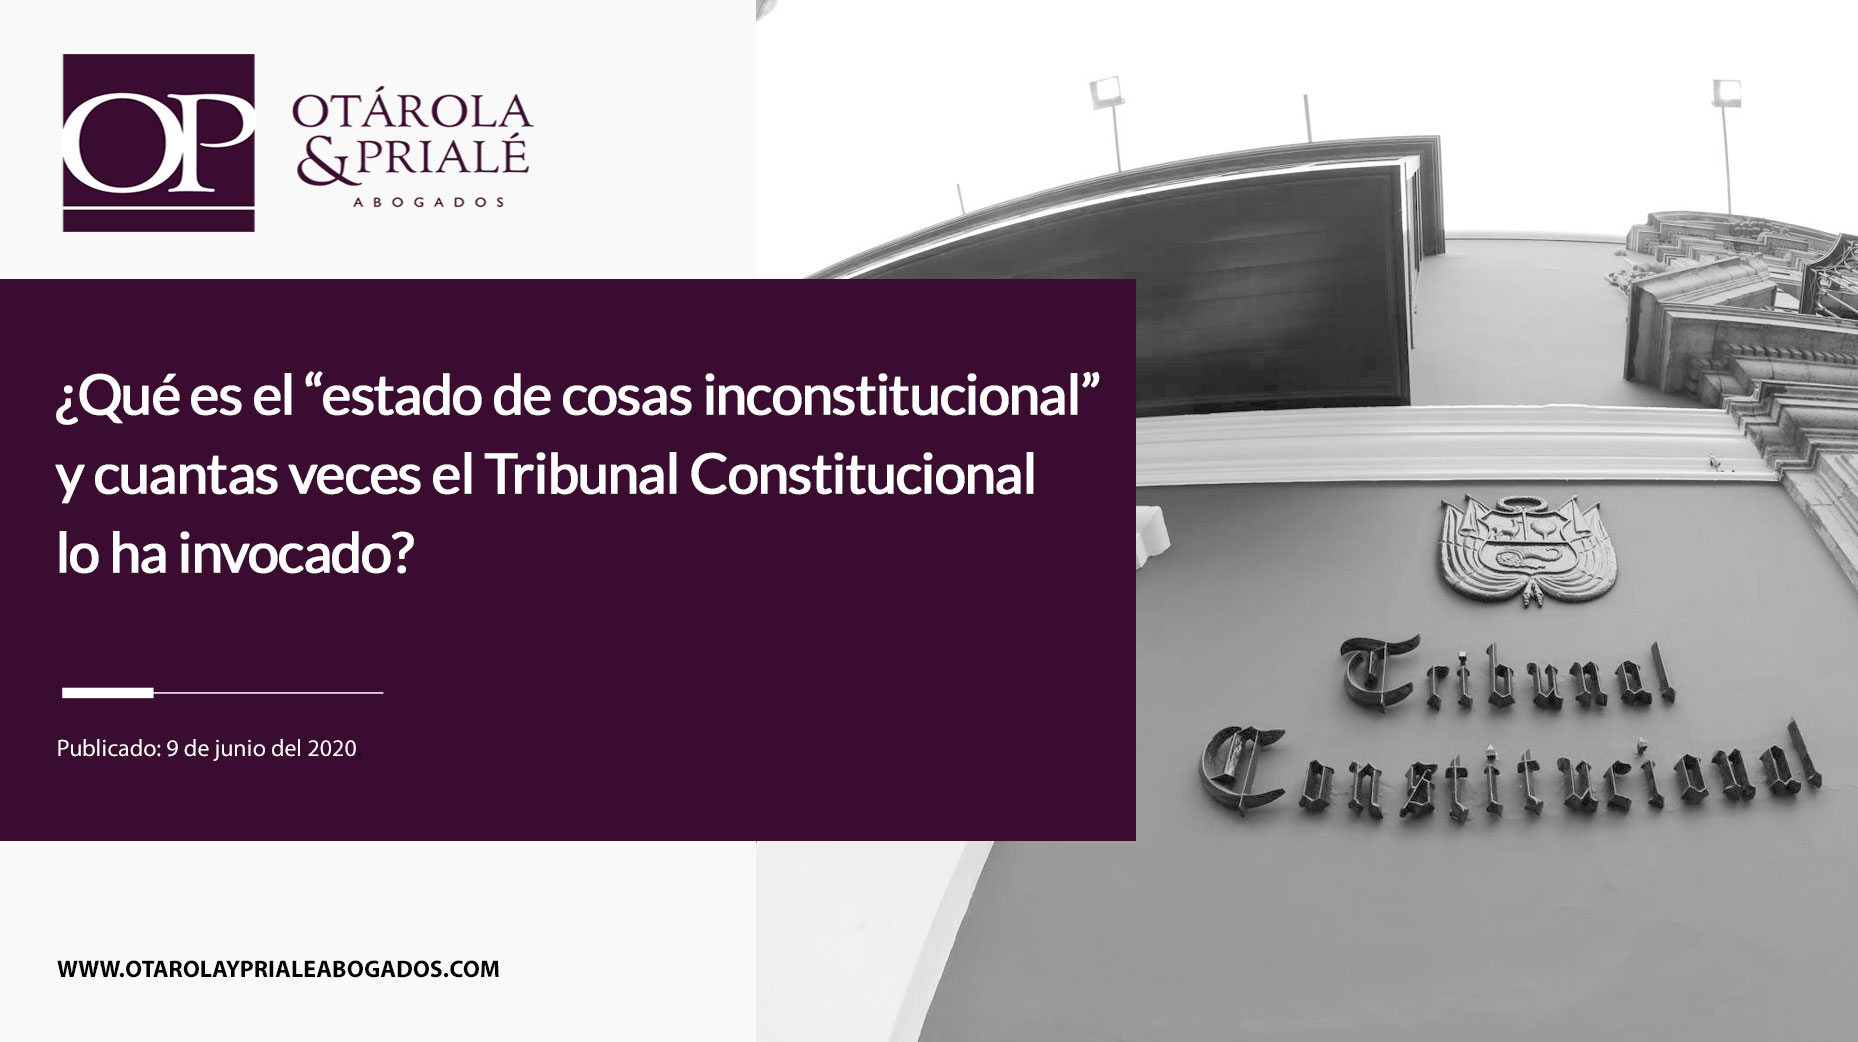 ¿Qué es el “estado de cosas inconstitucional” y cuántas veces el Tribunal Constitucional lo ha invocado?